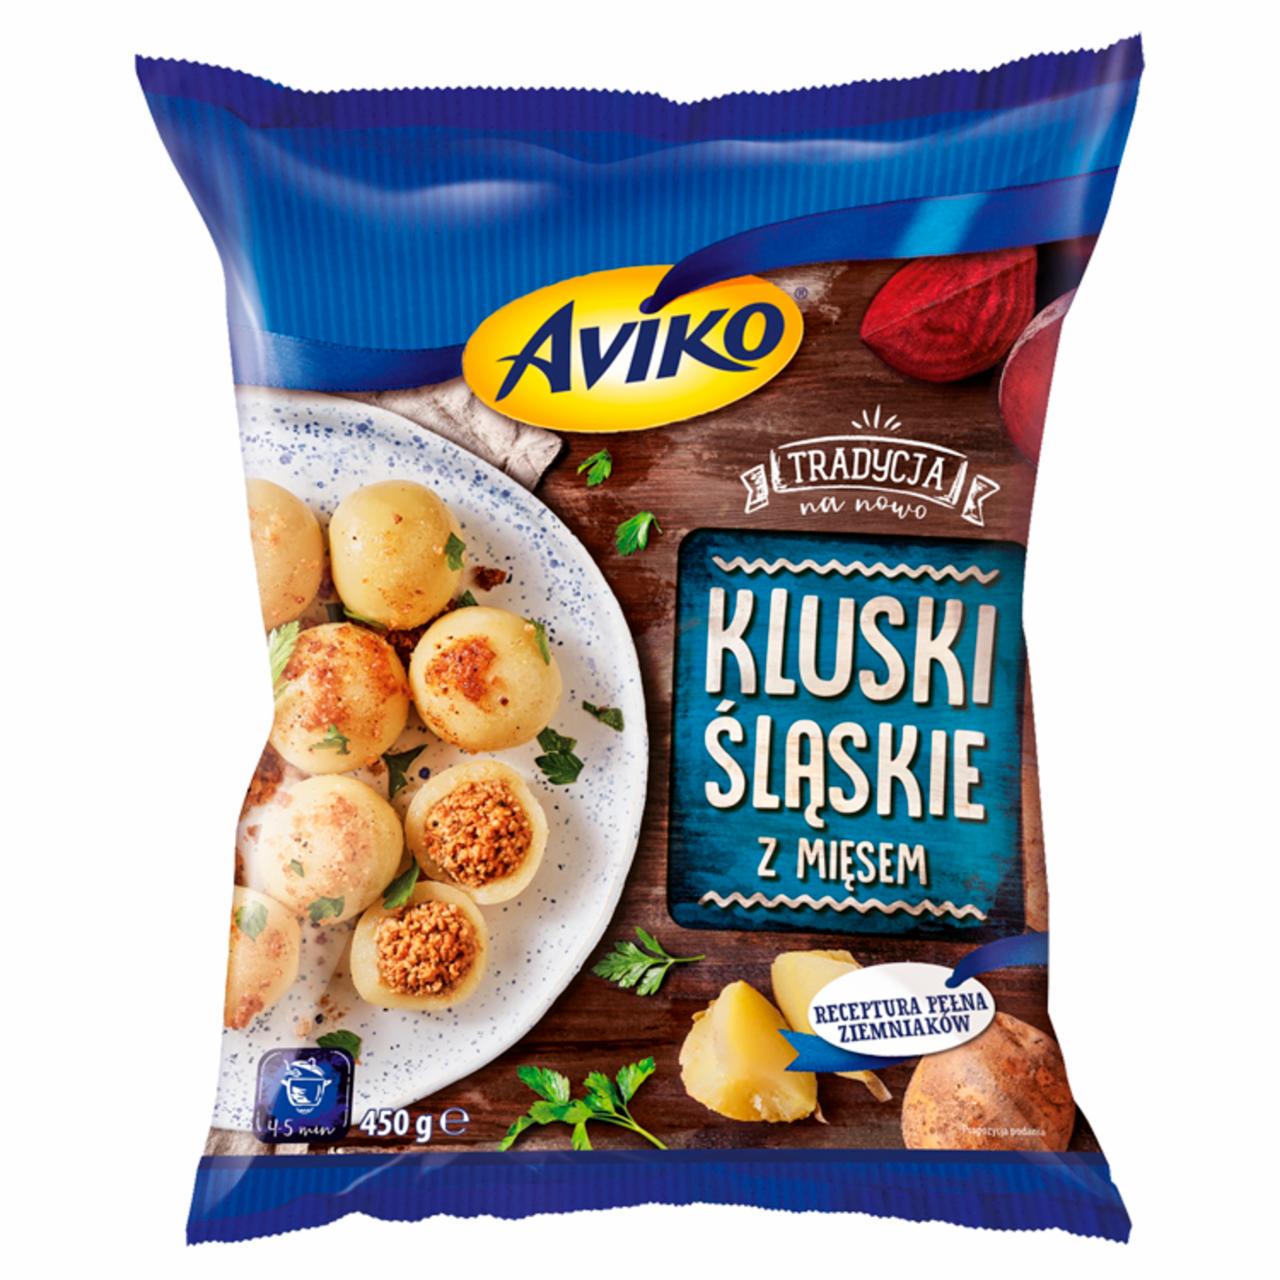 Zdjęcia - Aviko Kluski śląskie z mięsem 450 g